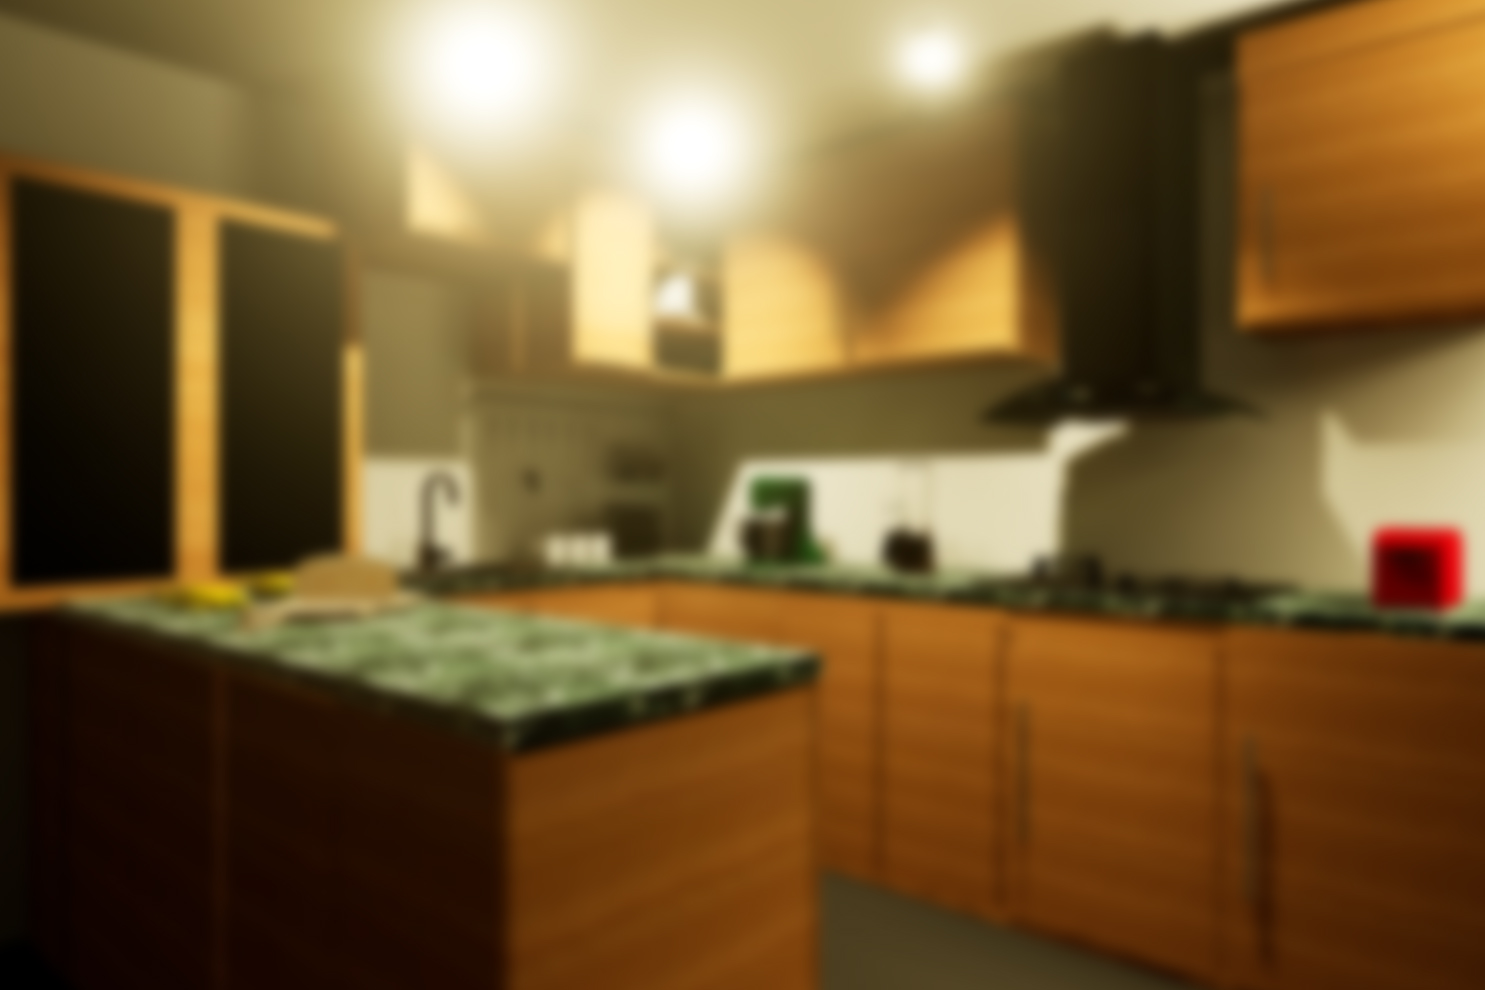 Blick in die Küche mit grauem Star: Das Bild wird unscharf, die Lichtquellen führen zu unangenehmen Streuungseffekten. © TU Wien